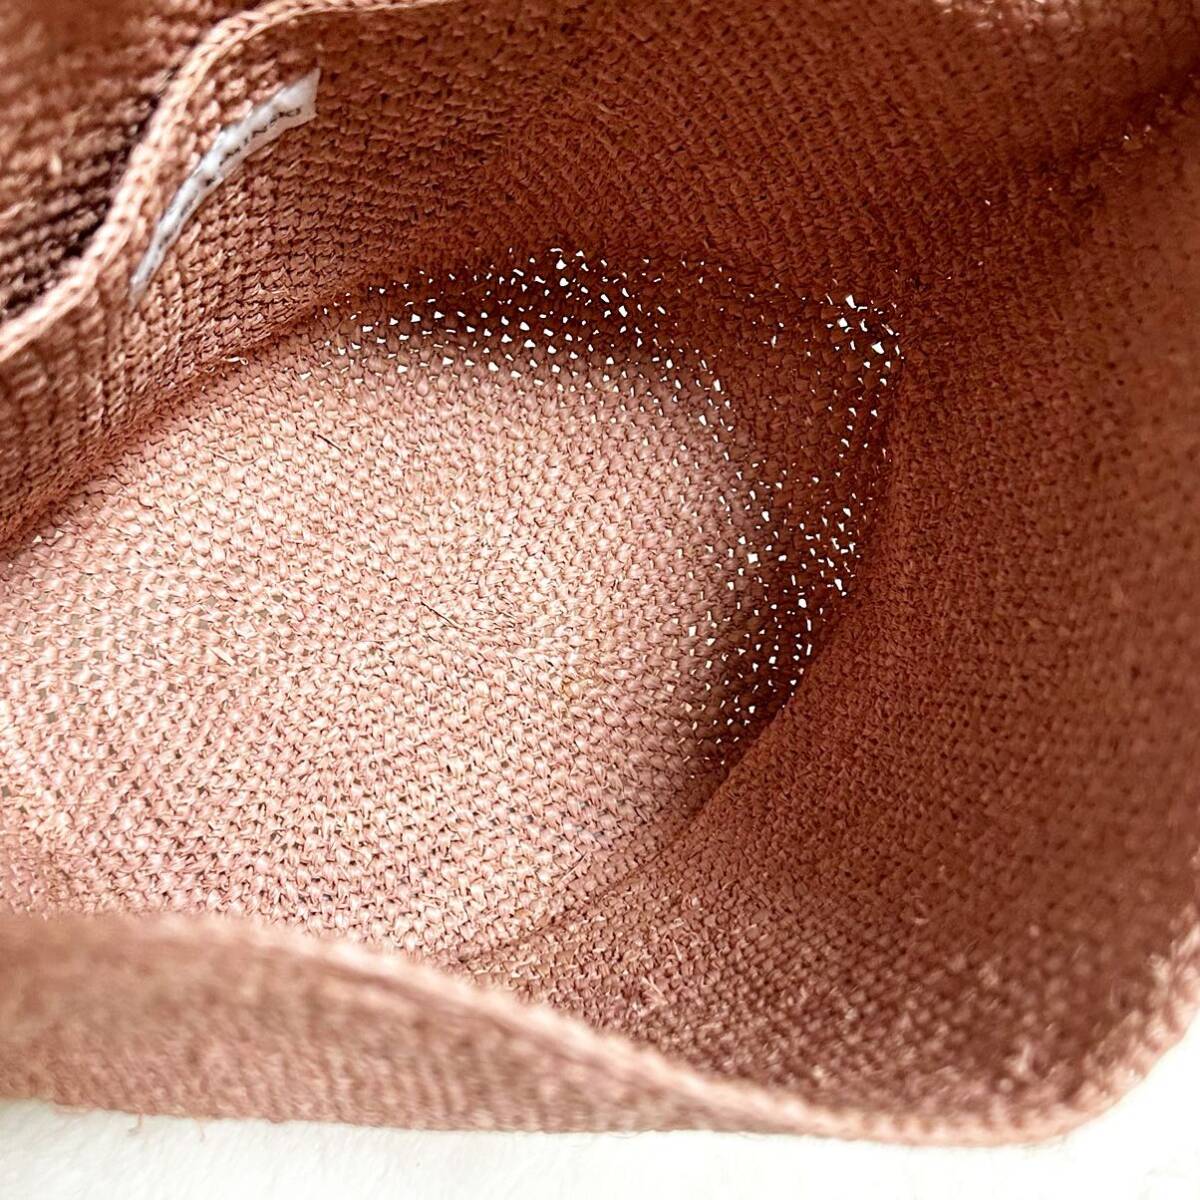  beautiful goods Helen Kaminsky shoulder bag Carillo S basket bag pink rough .a leather original leather 